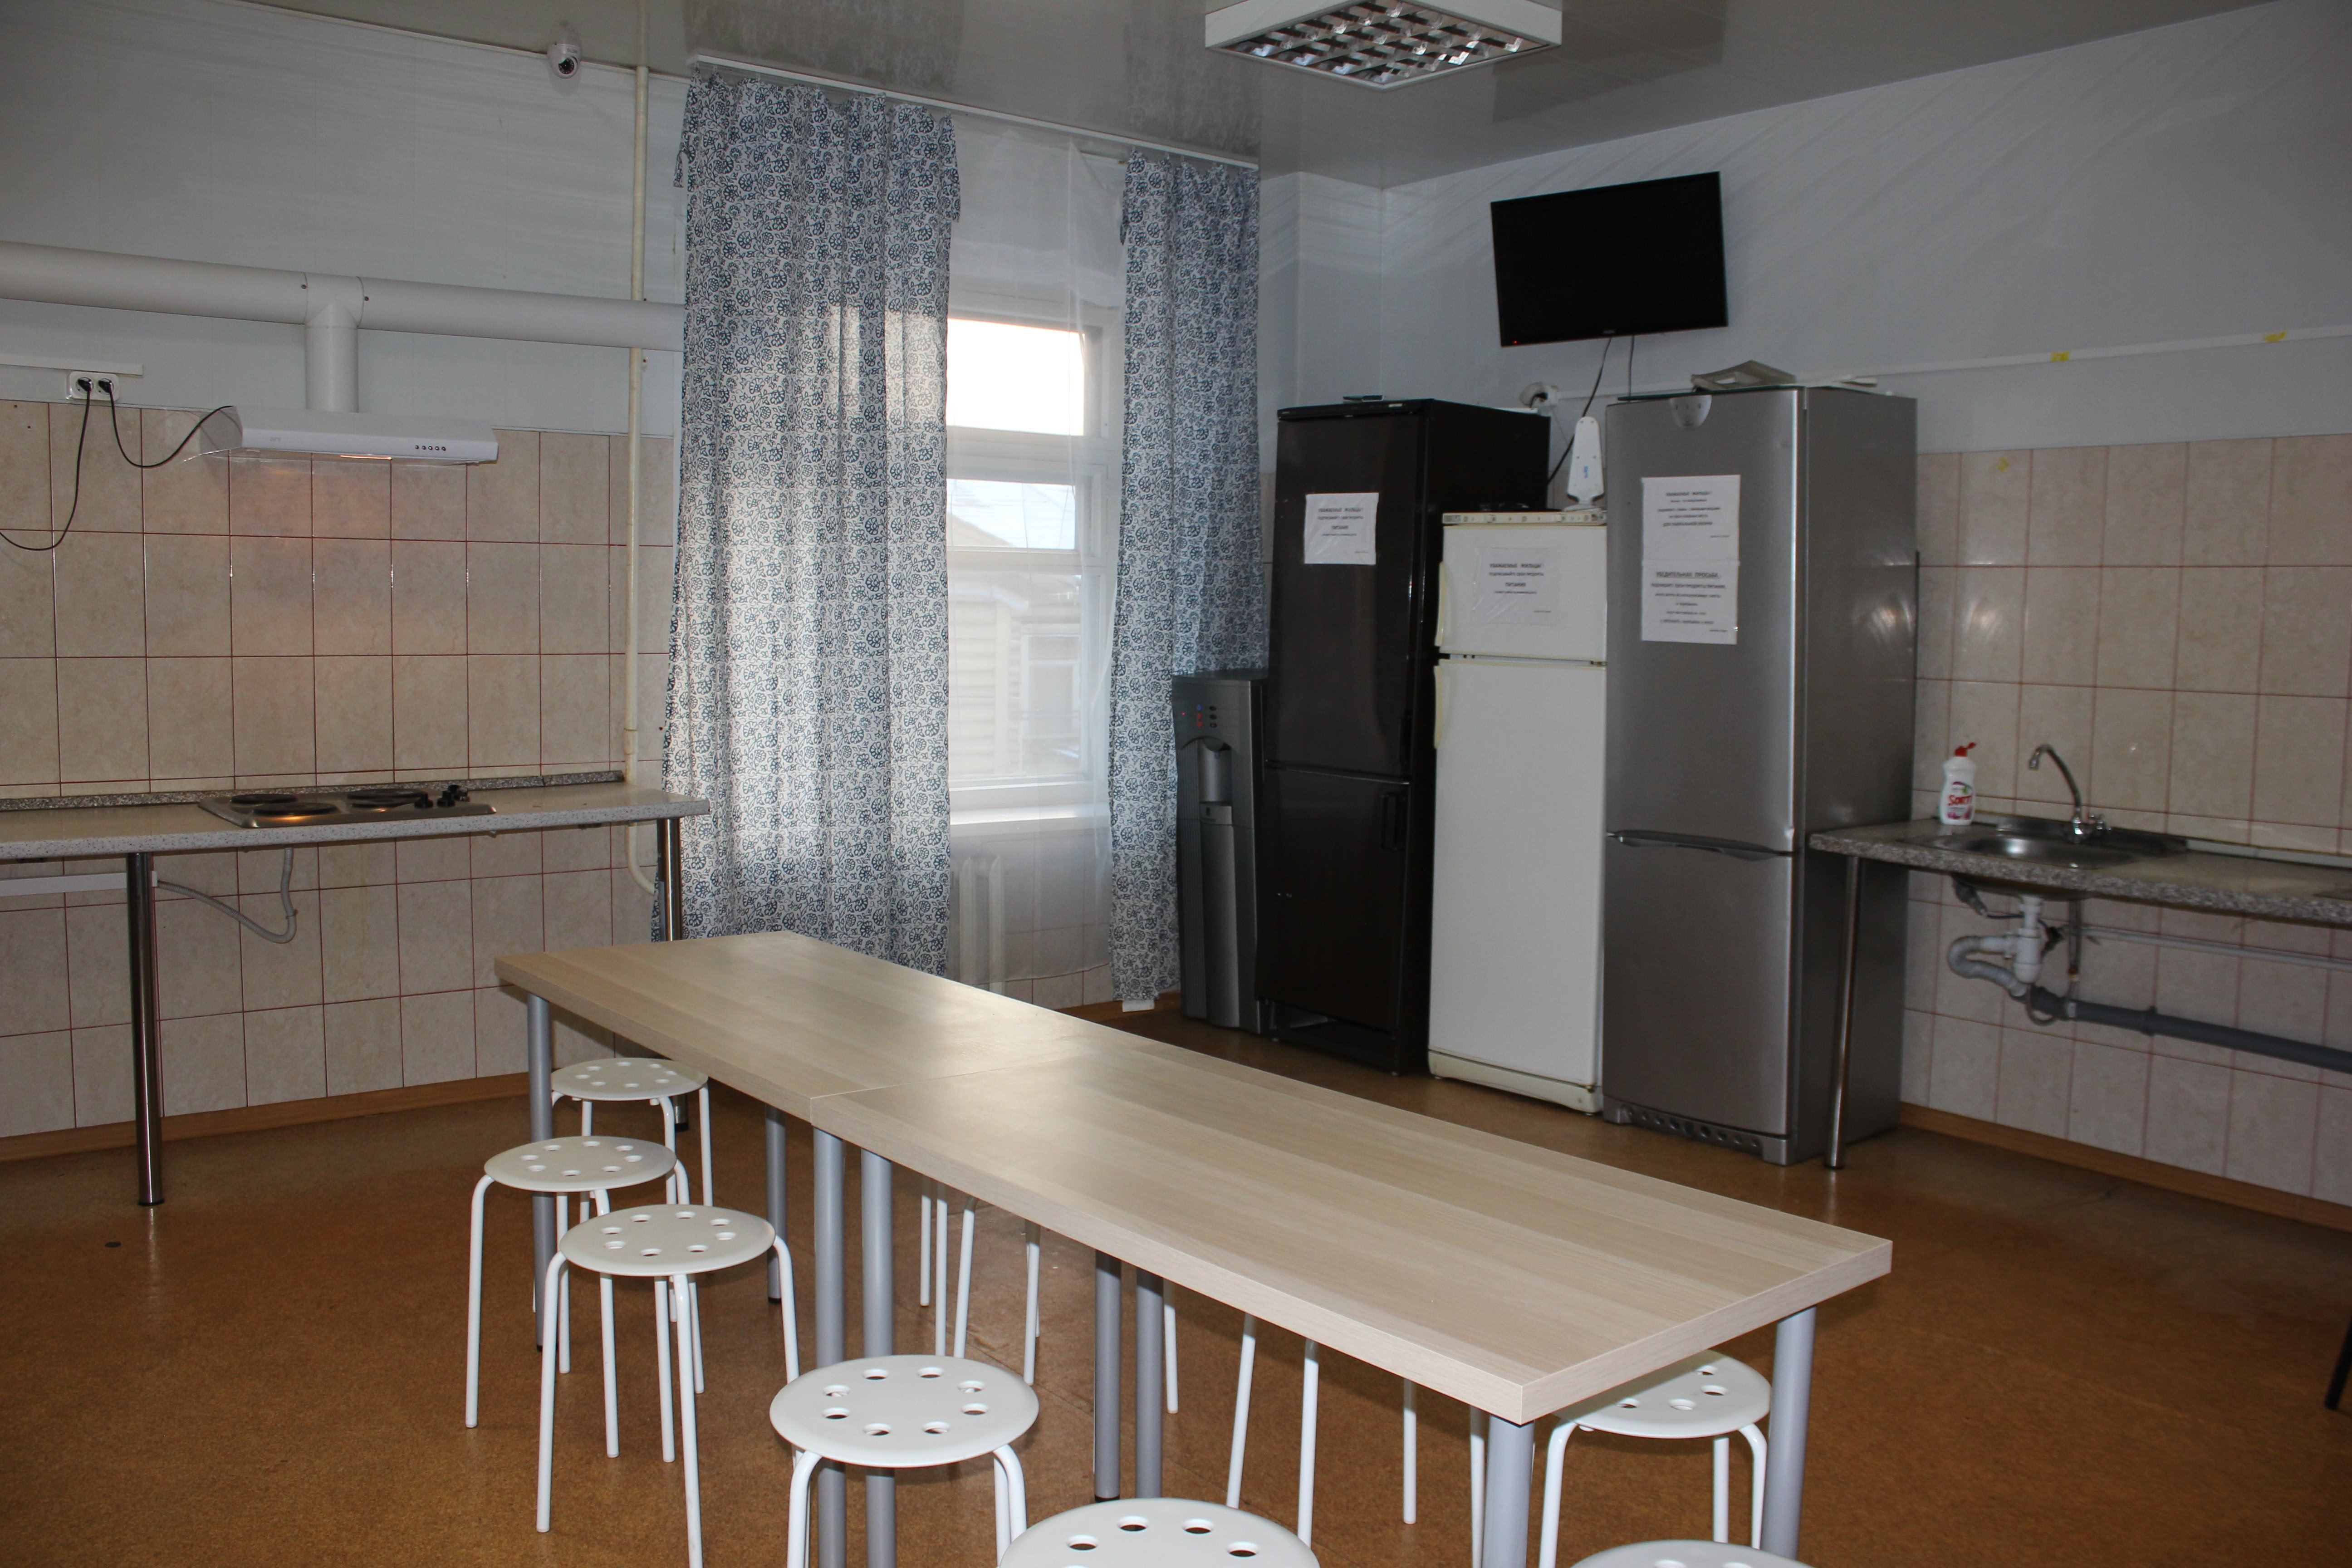 Общая кухня в общежитии. Круглый стол на кухне в общежитии. Мебель для общежитий. Кухня в общежитии фото.